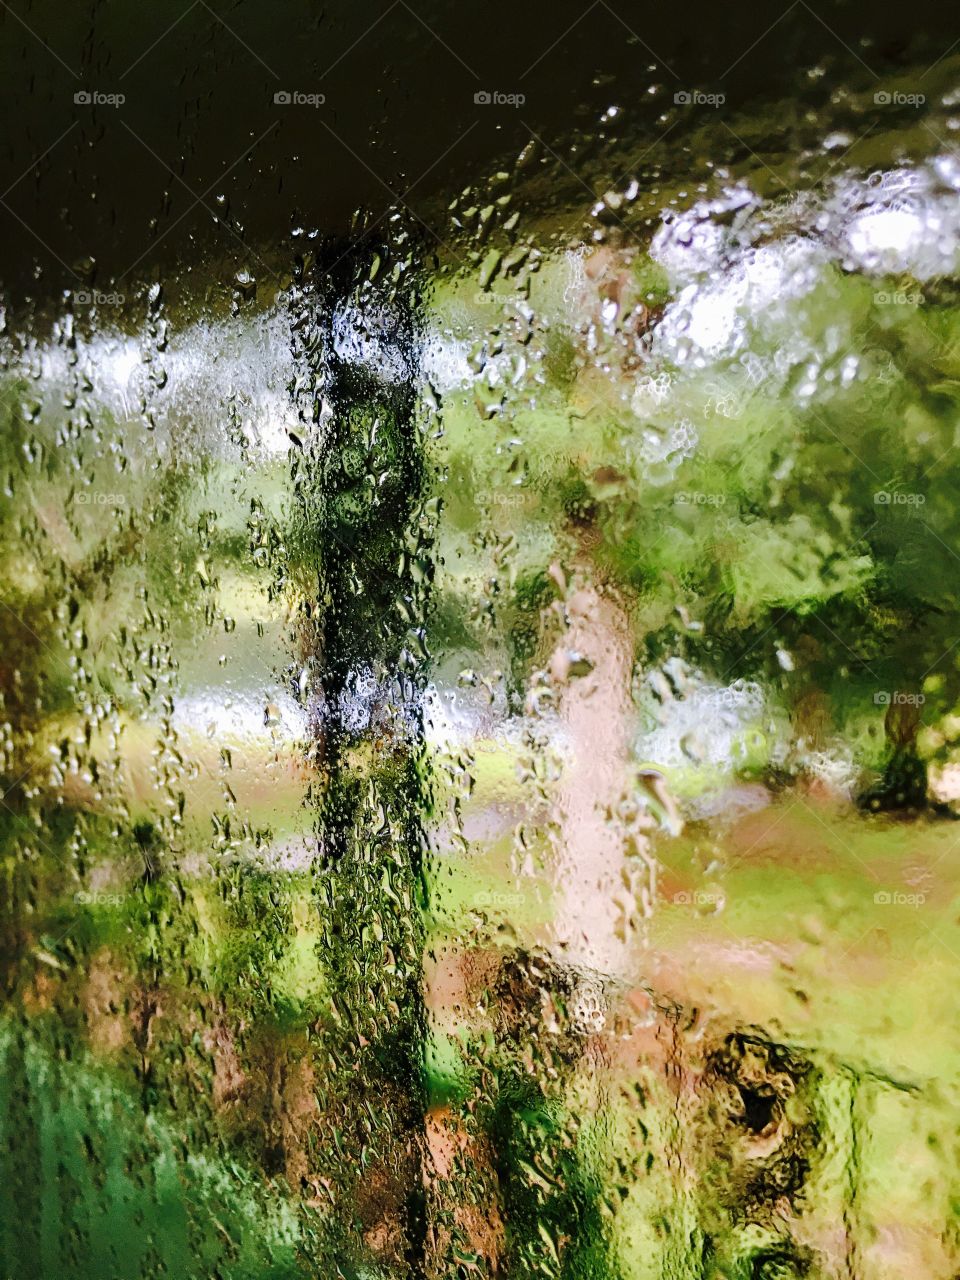 Window condensation.